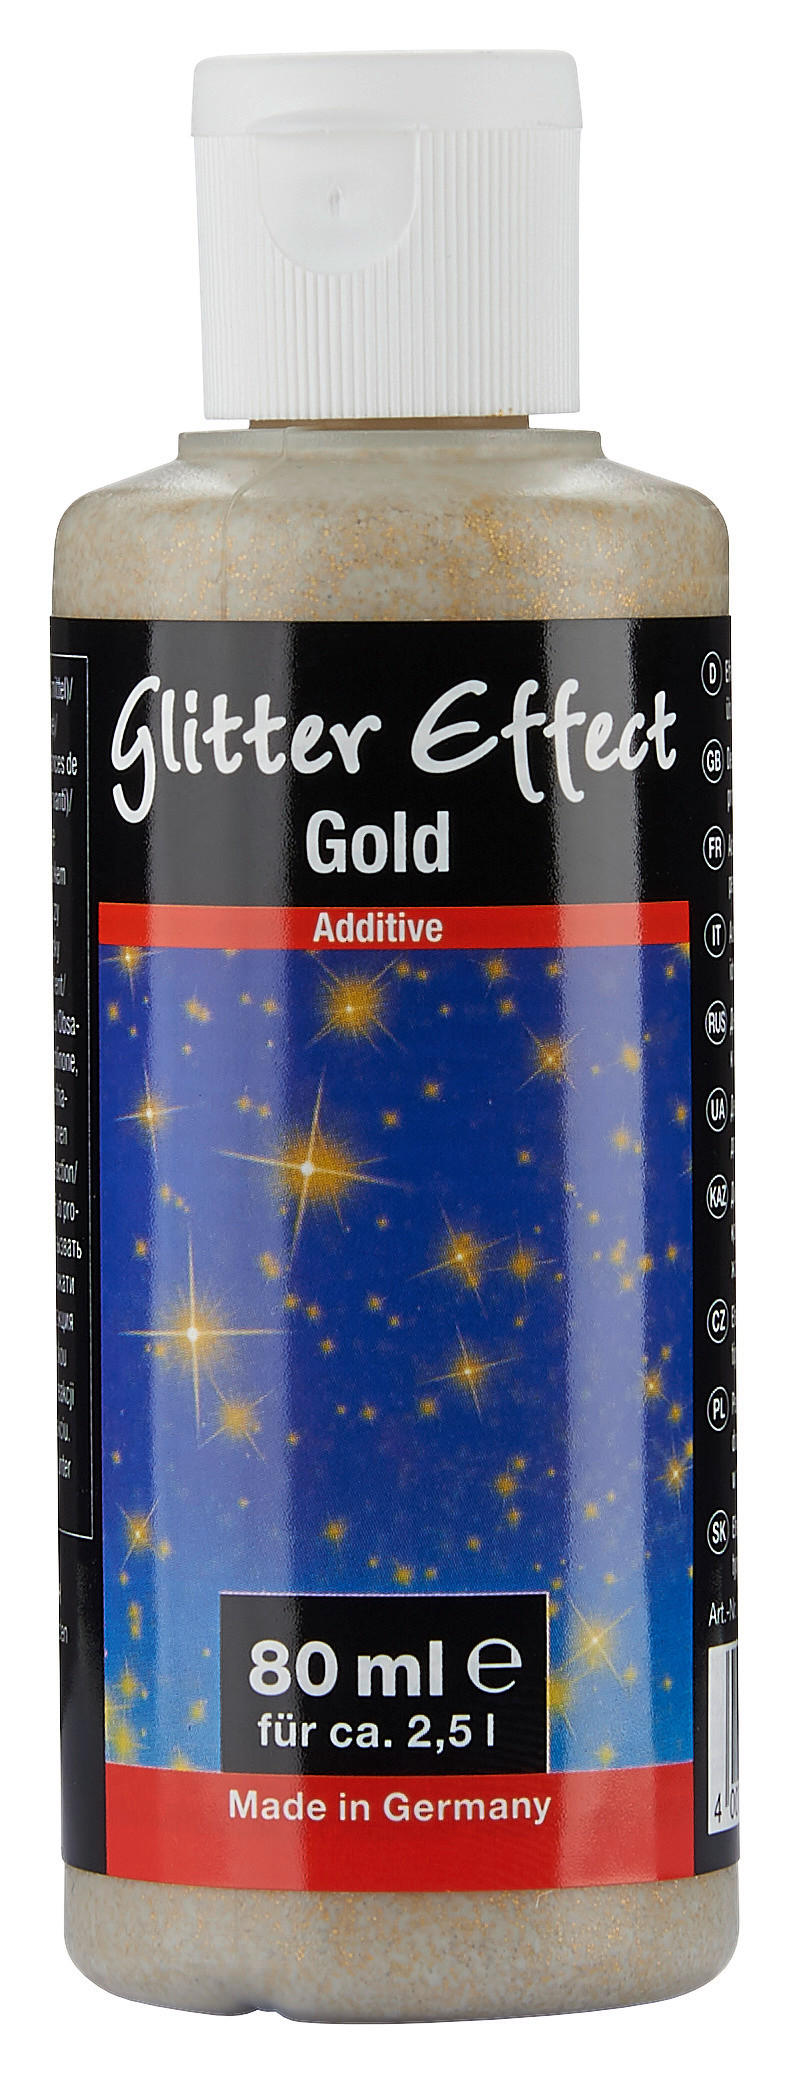 Glitter Effect gold ca. 0,08 l Glitter_Effect 80ml - gold (80ml)